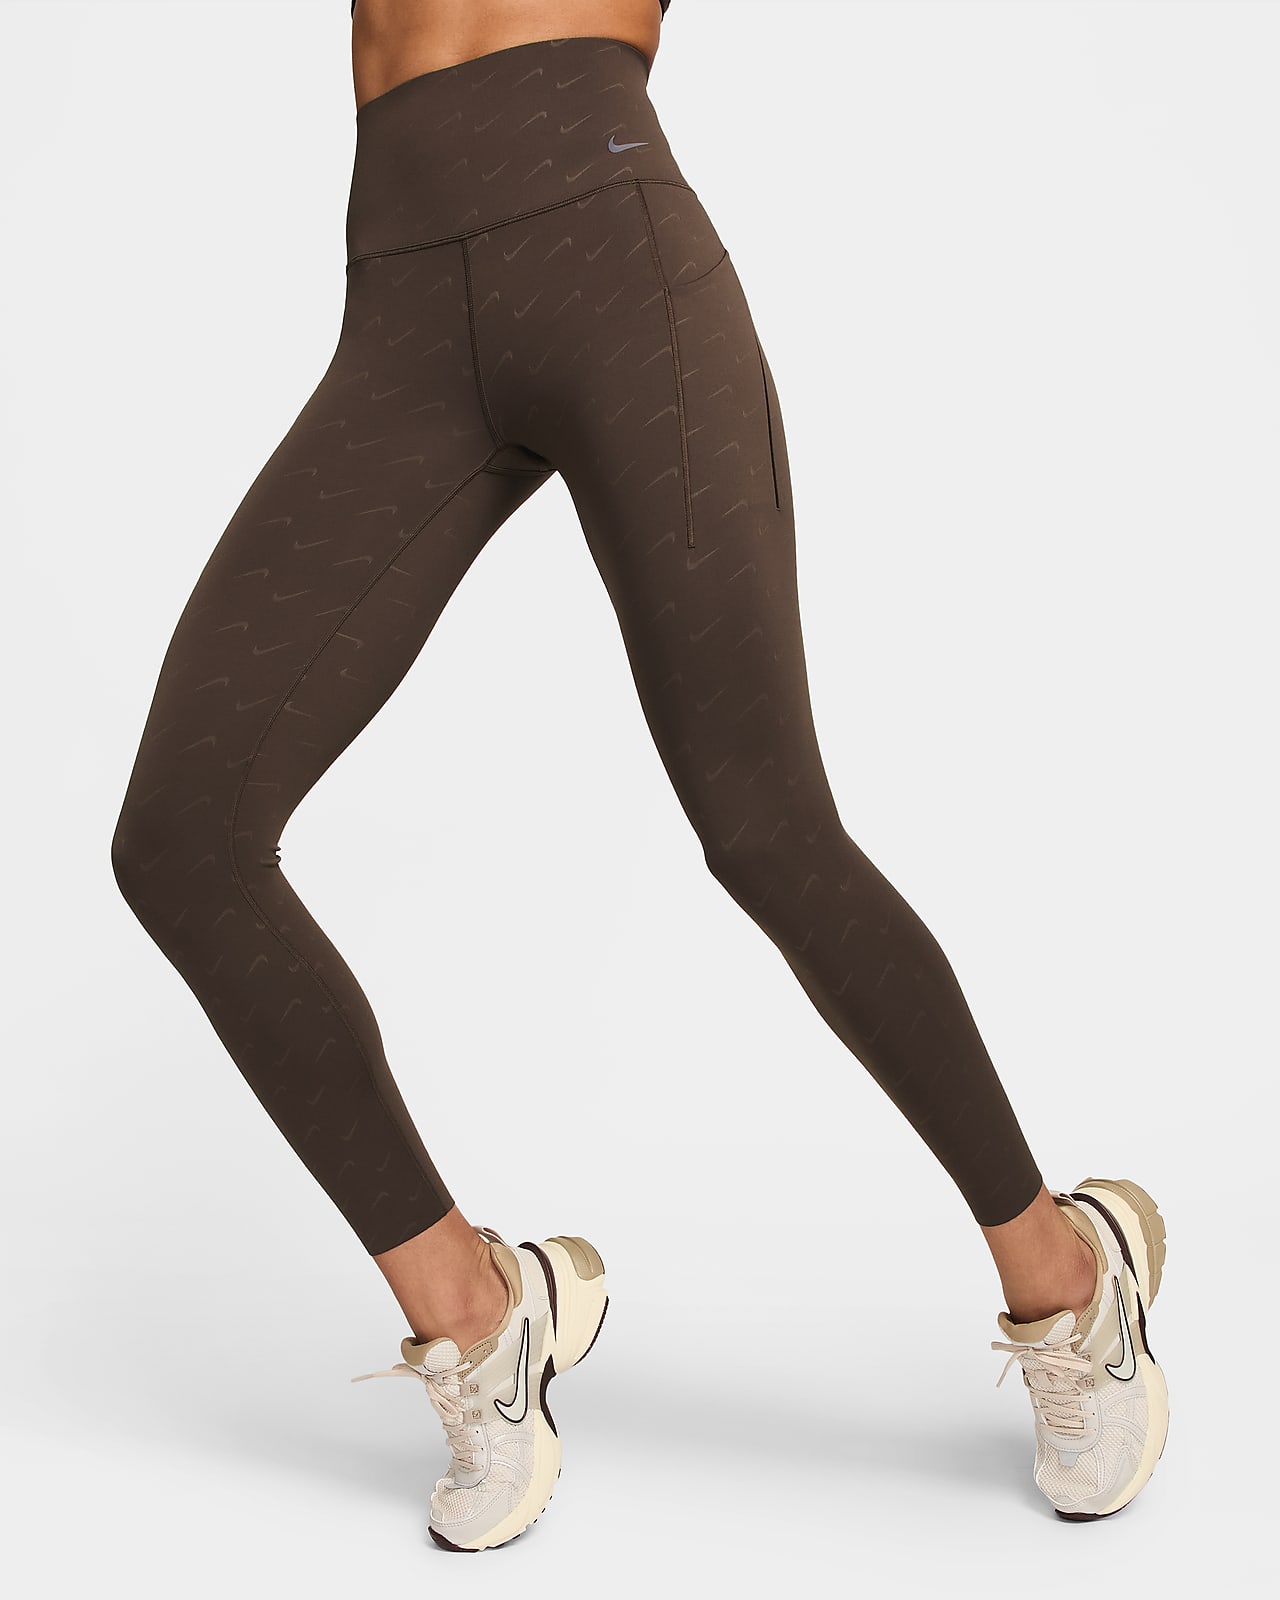 Nike Women's Universa Medium-Support High-Waisted Full-Length Leggings